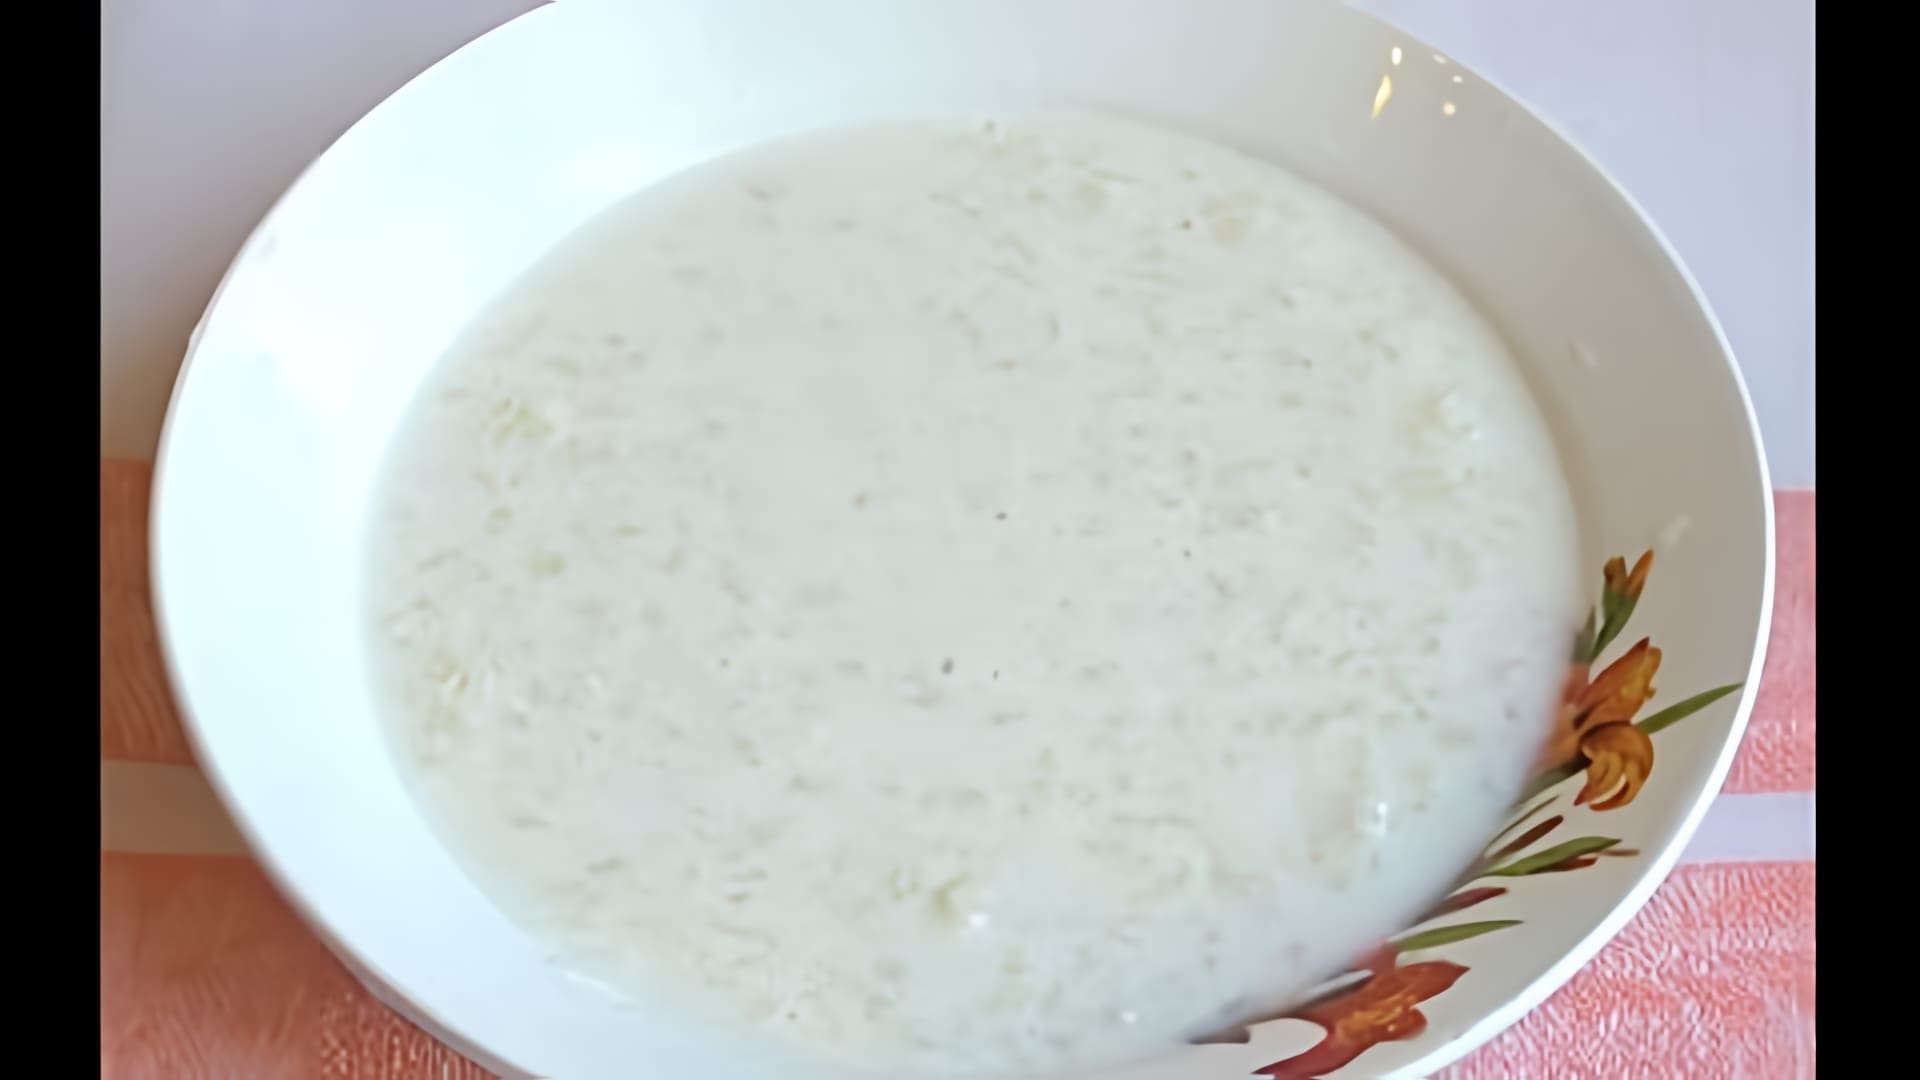 В этом видео демонстрируется процесс приготовления молочной рисовой каши в мультиварке